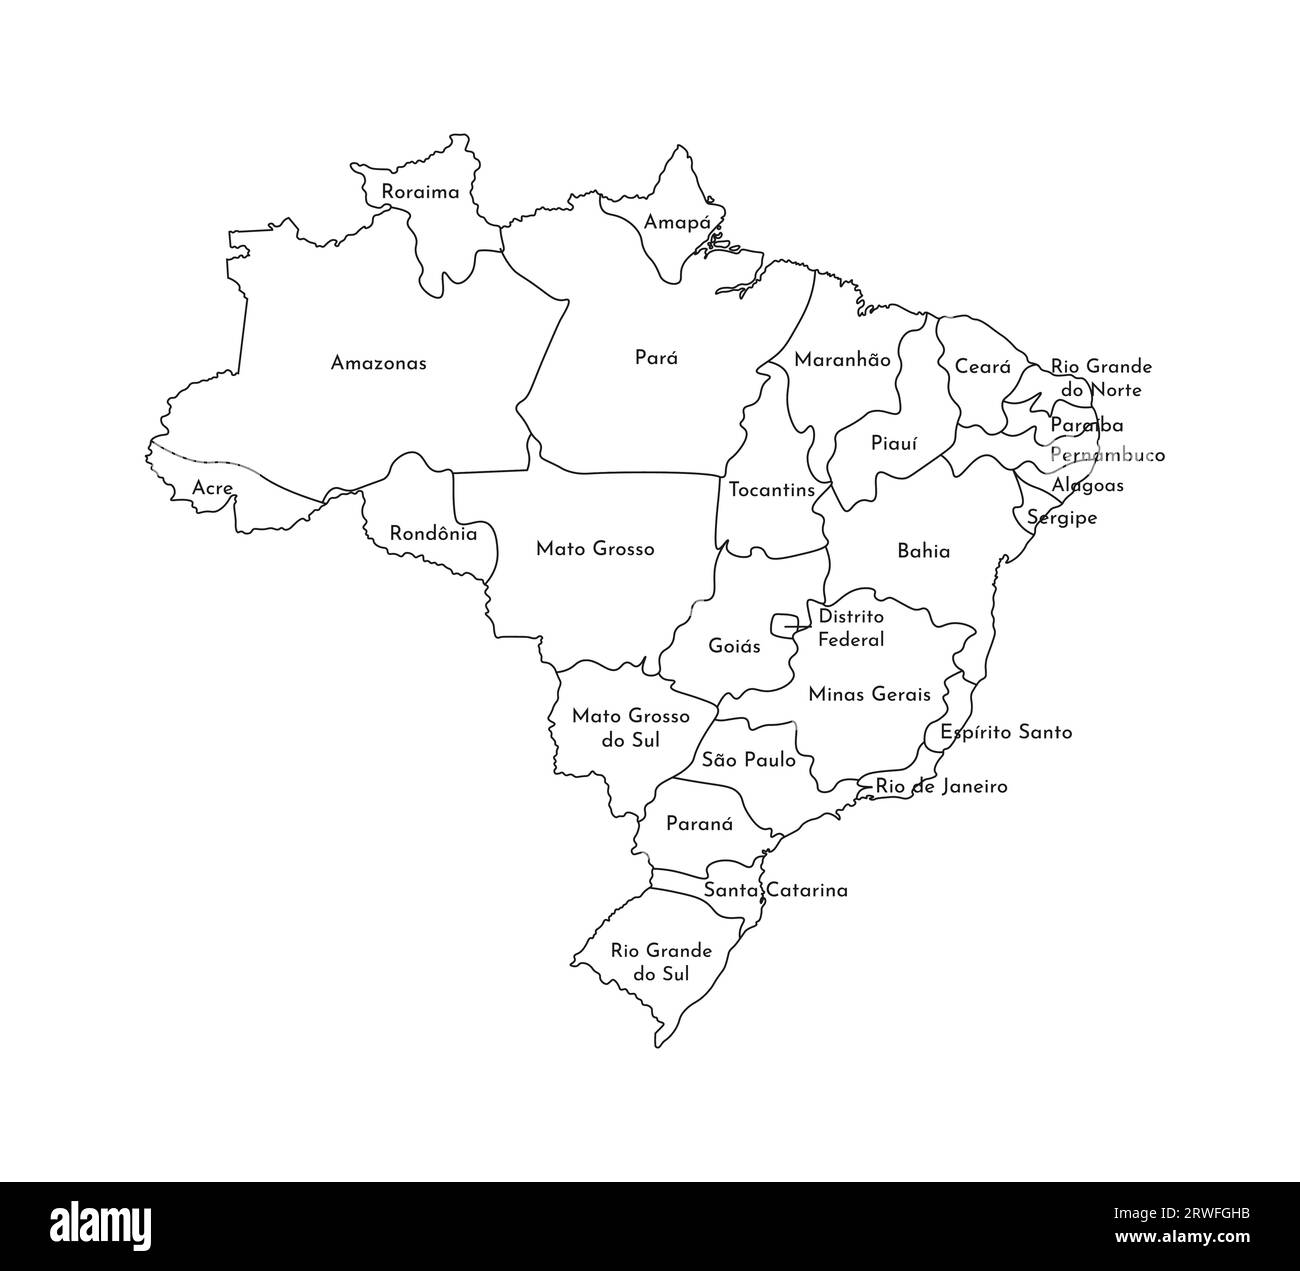 Vektor-isolierte Illustration einer vereinfachten Verwaltungskarte Brasiliens. Grenzen und Namen der Regionen. Silhouetten mit schwarzen Linien. Stock Vektor